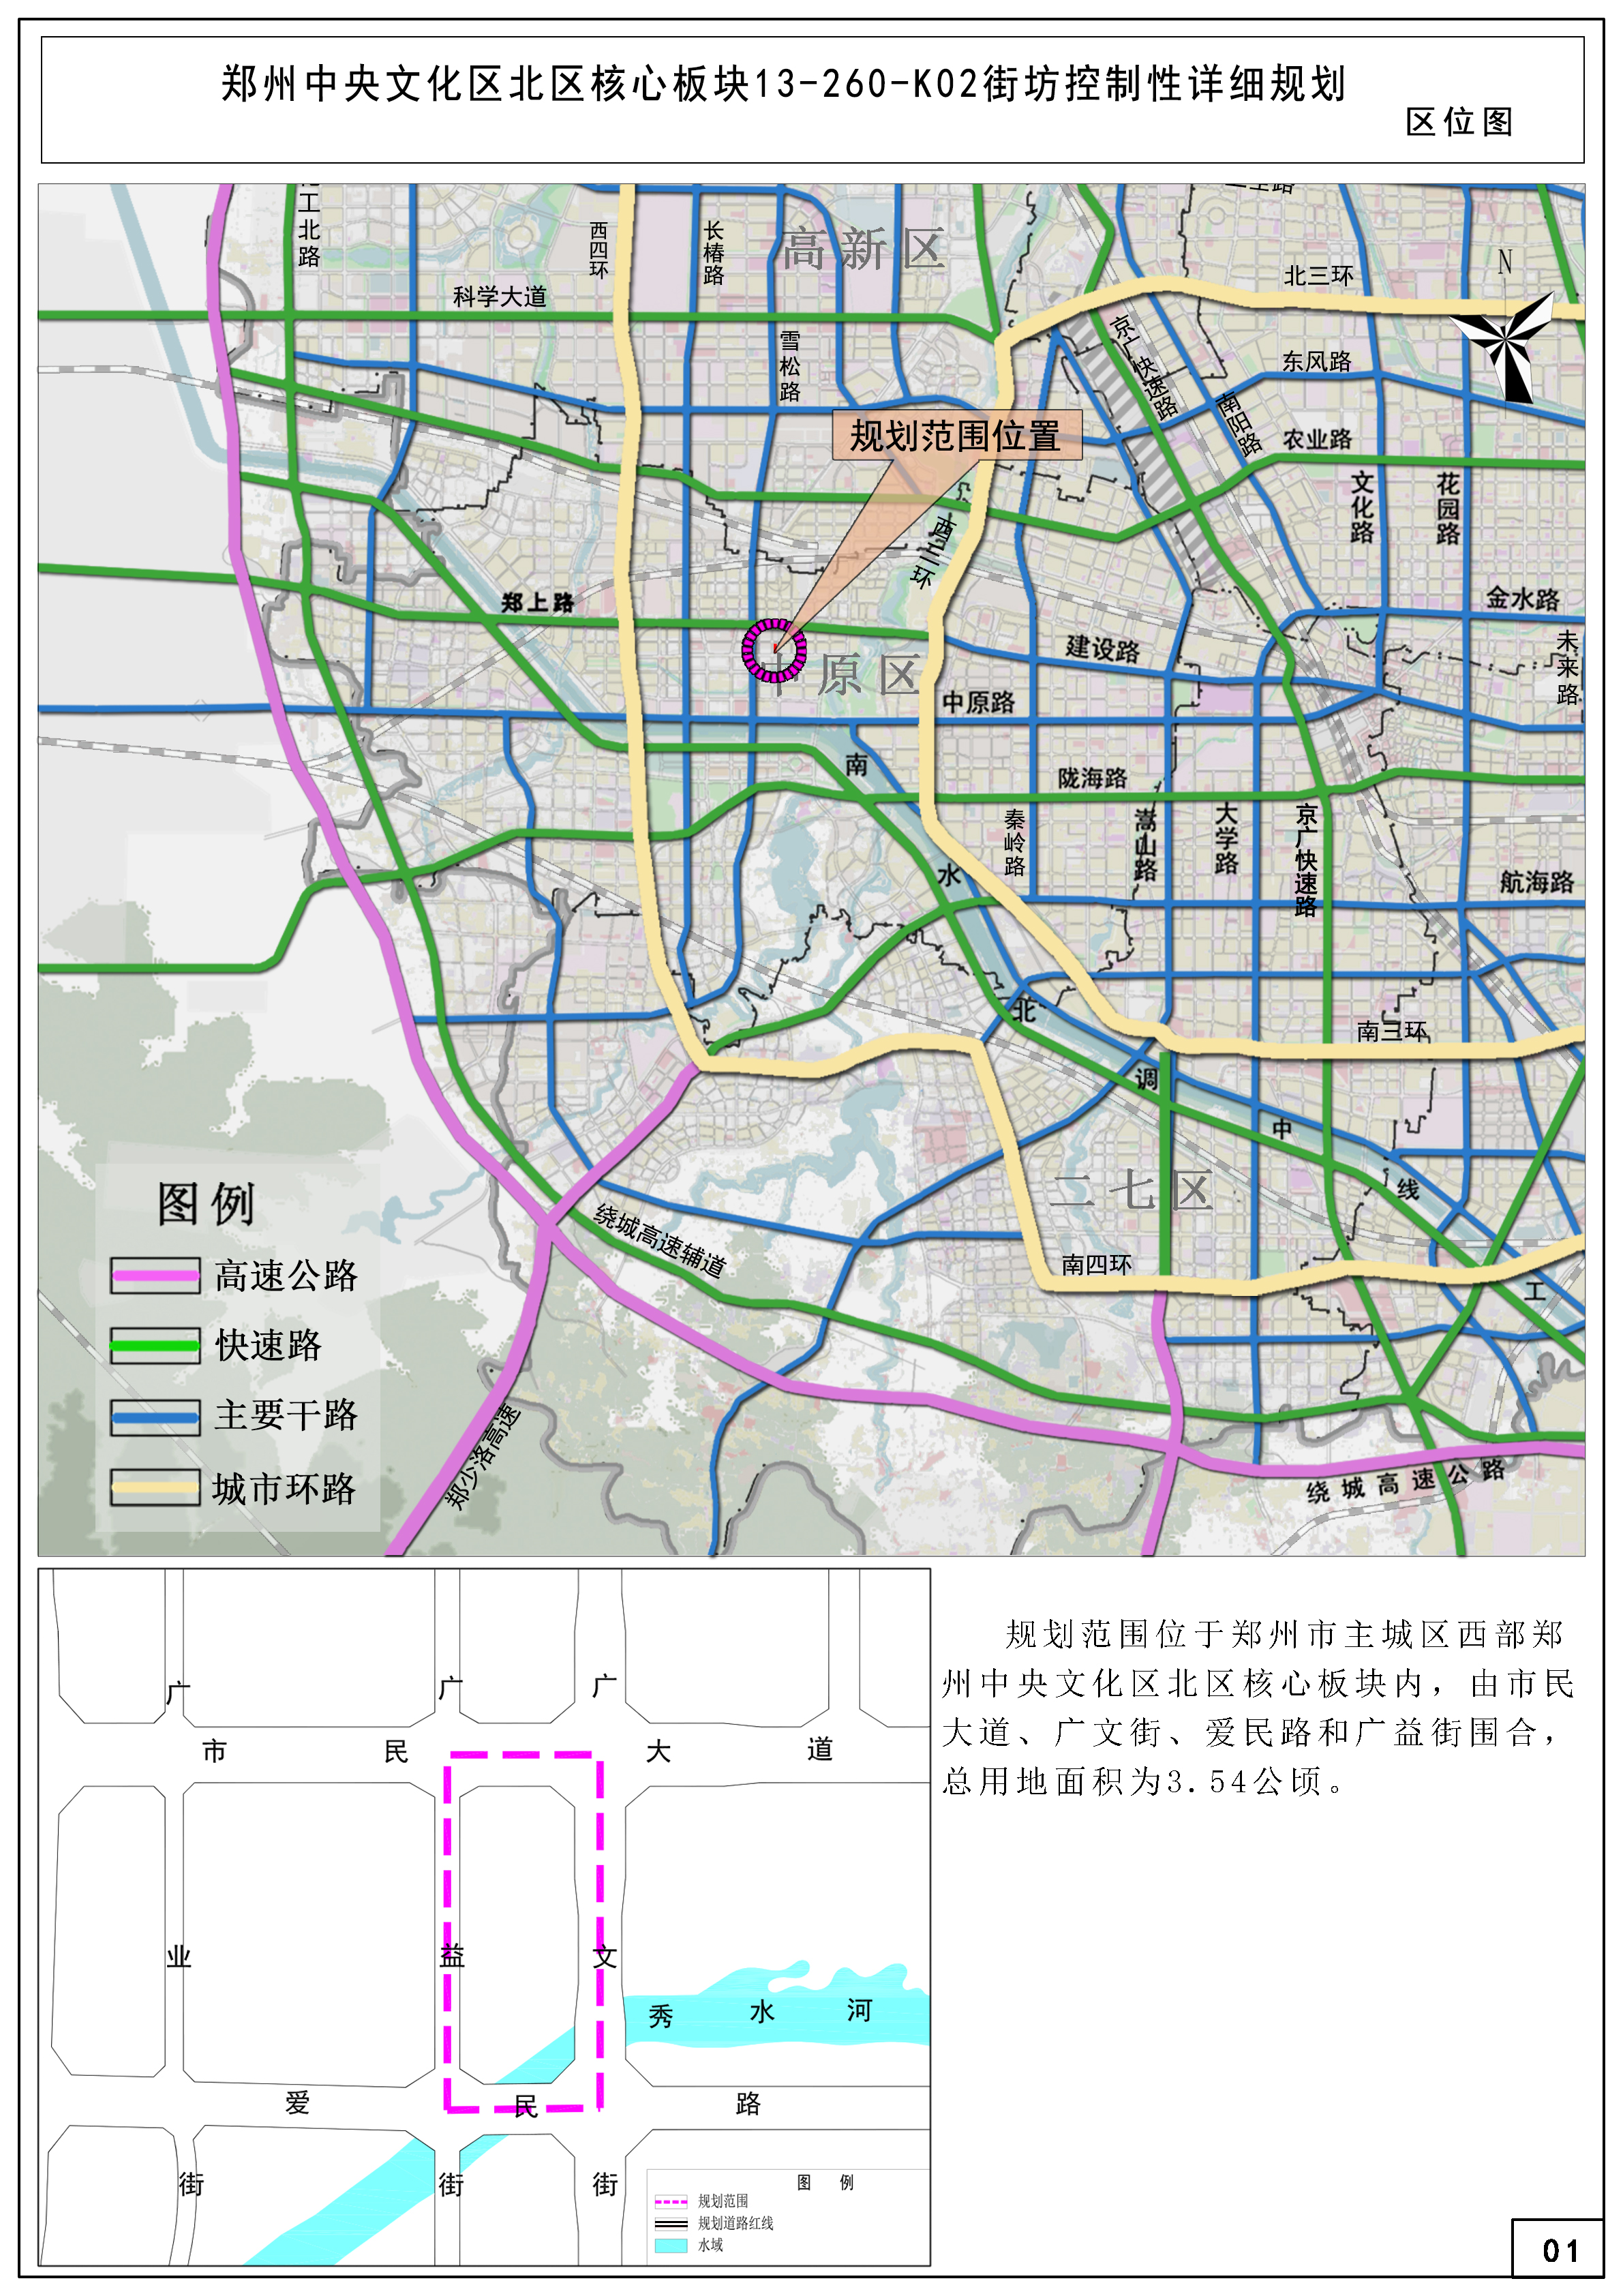 郑州中央文化区北区核心板块13-260-K02街坊控制性详细规划